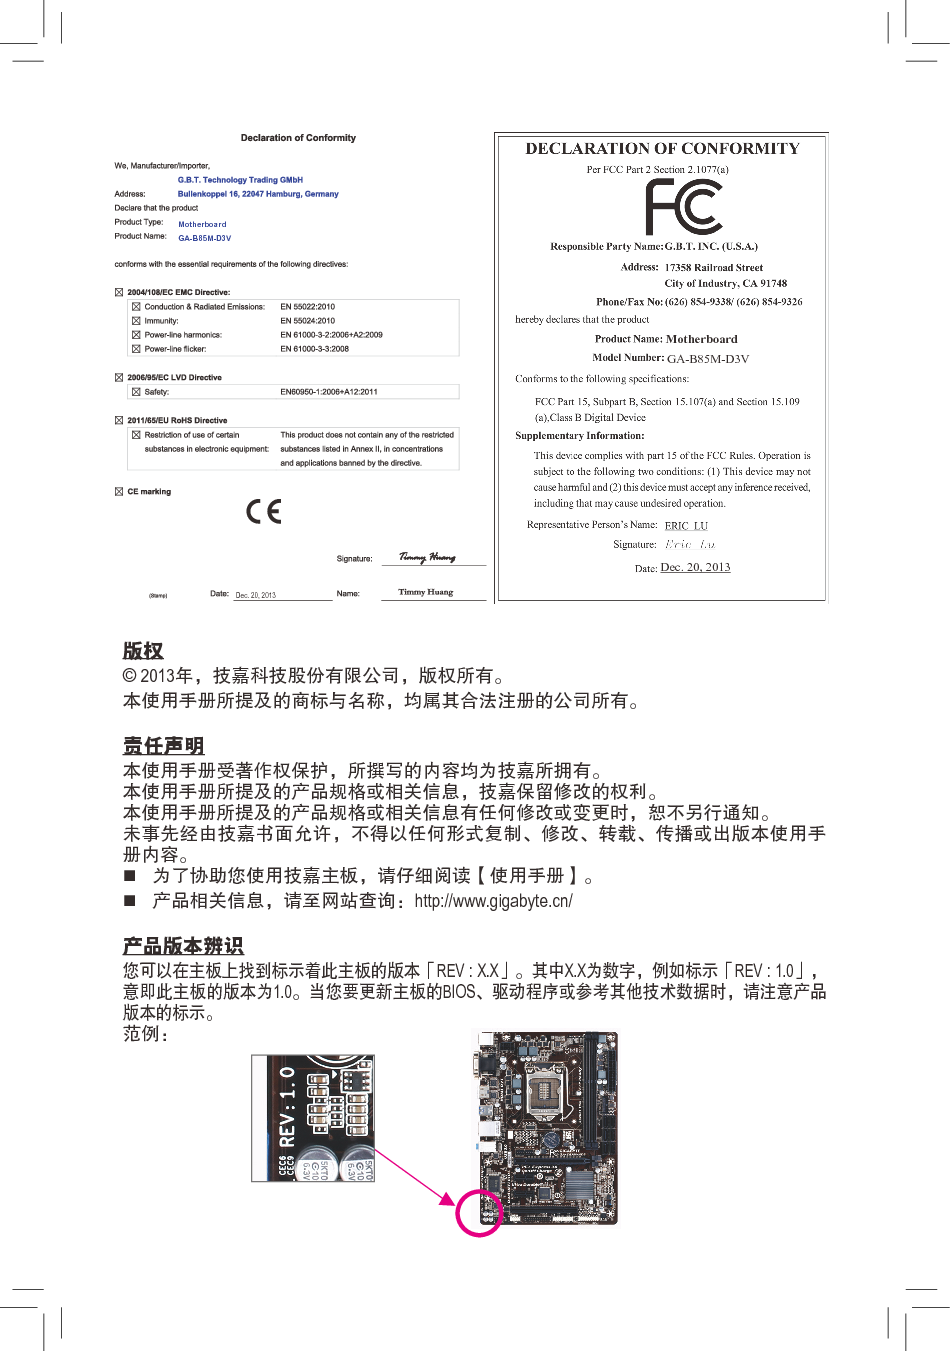 技嘉 Gigabyte GA-B85M-D3V 2001版 使用手册 第1页